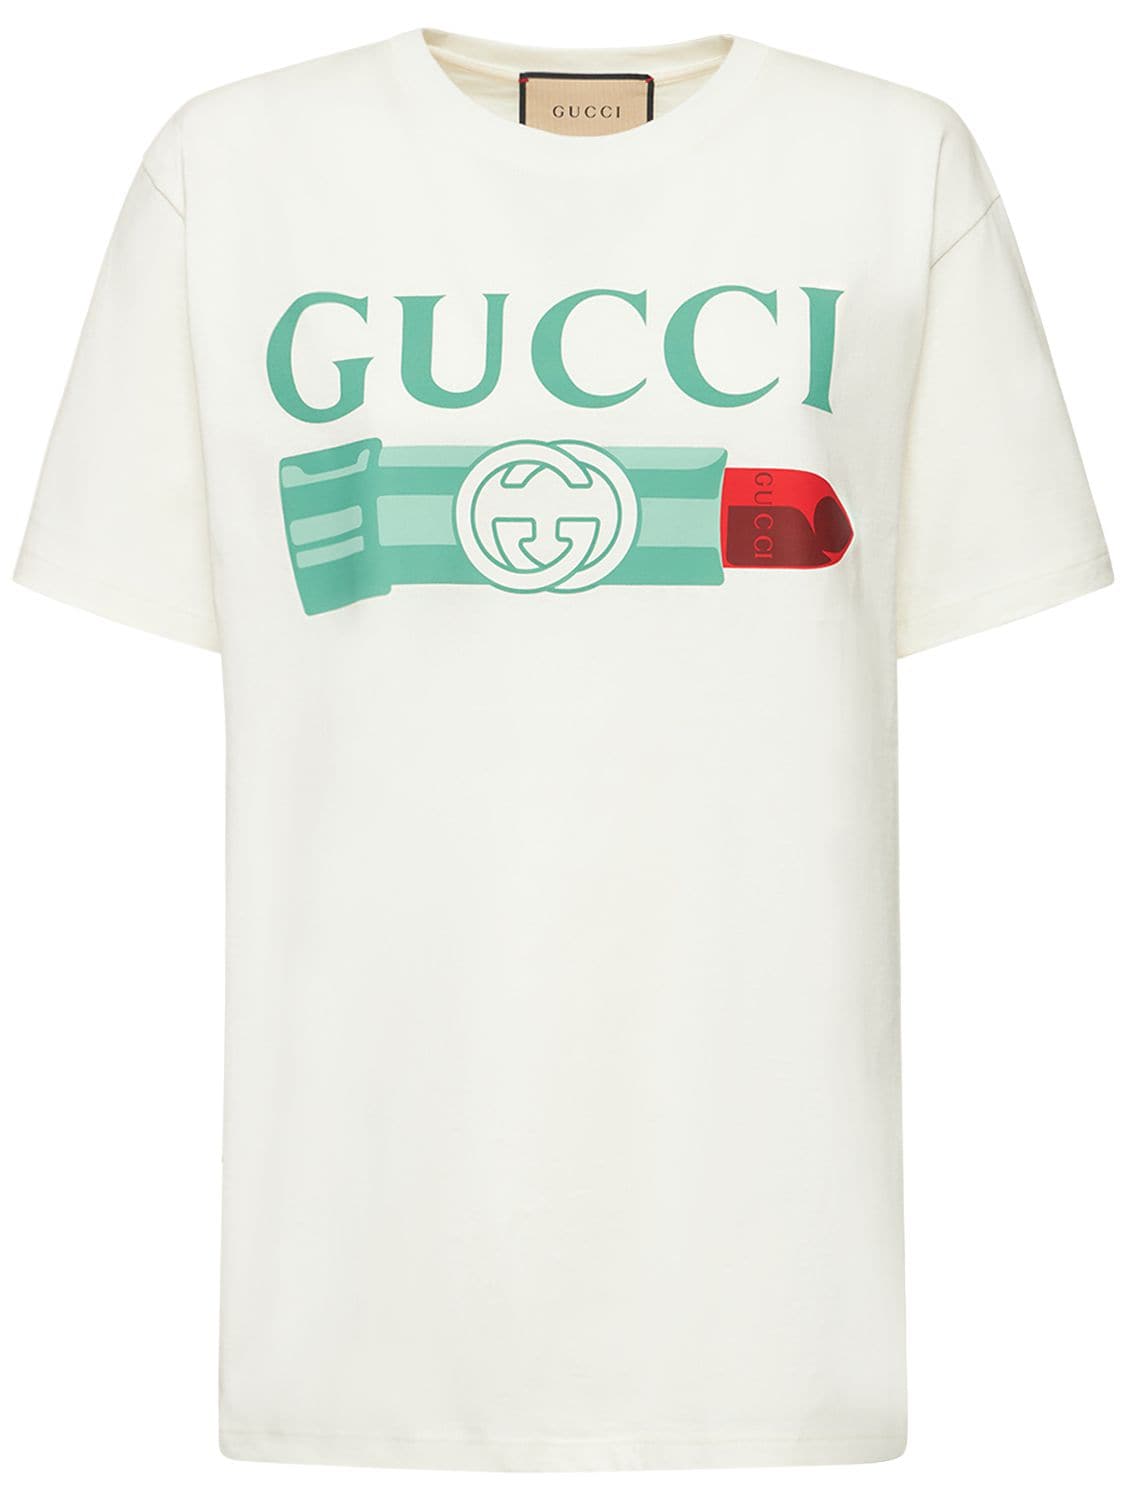 G-LOVED大廓型棉质T恤